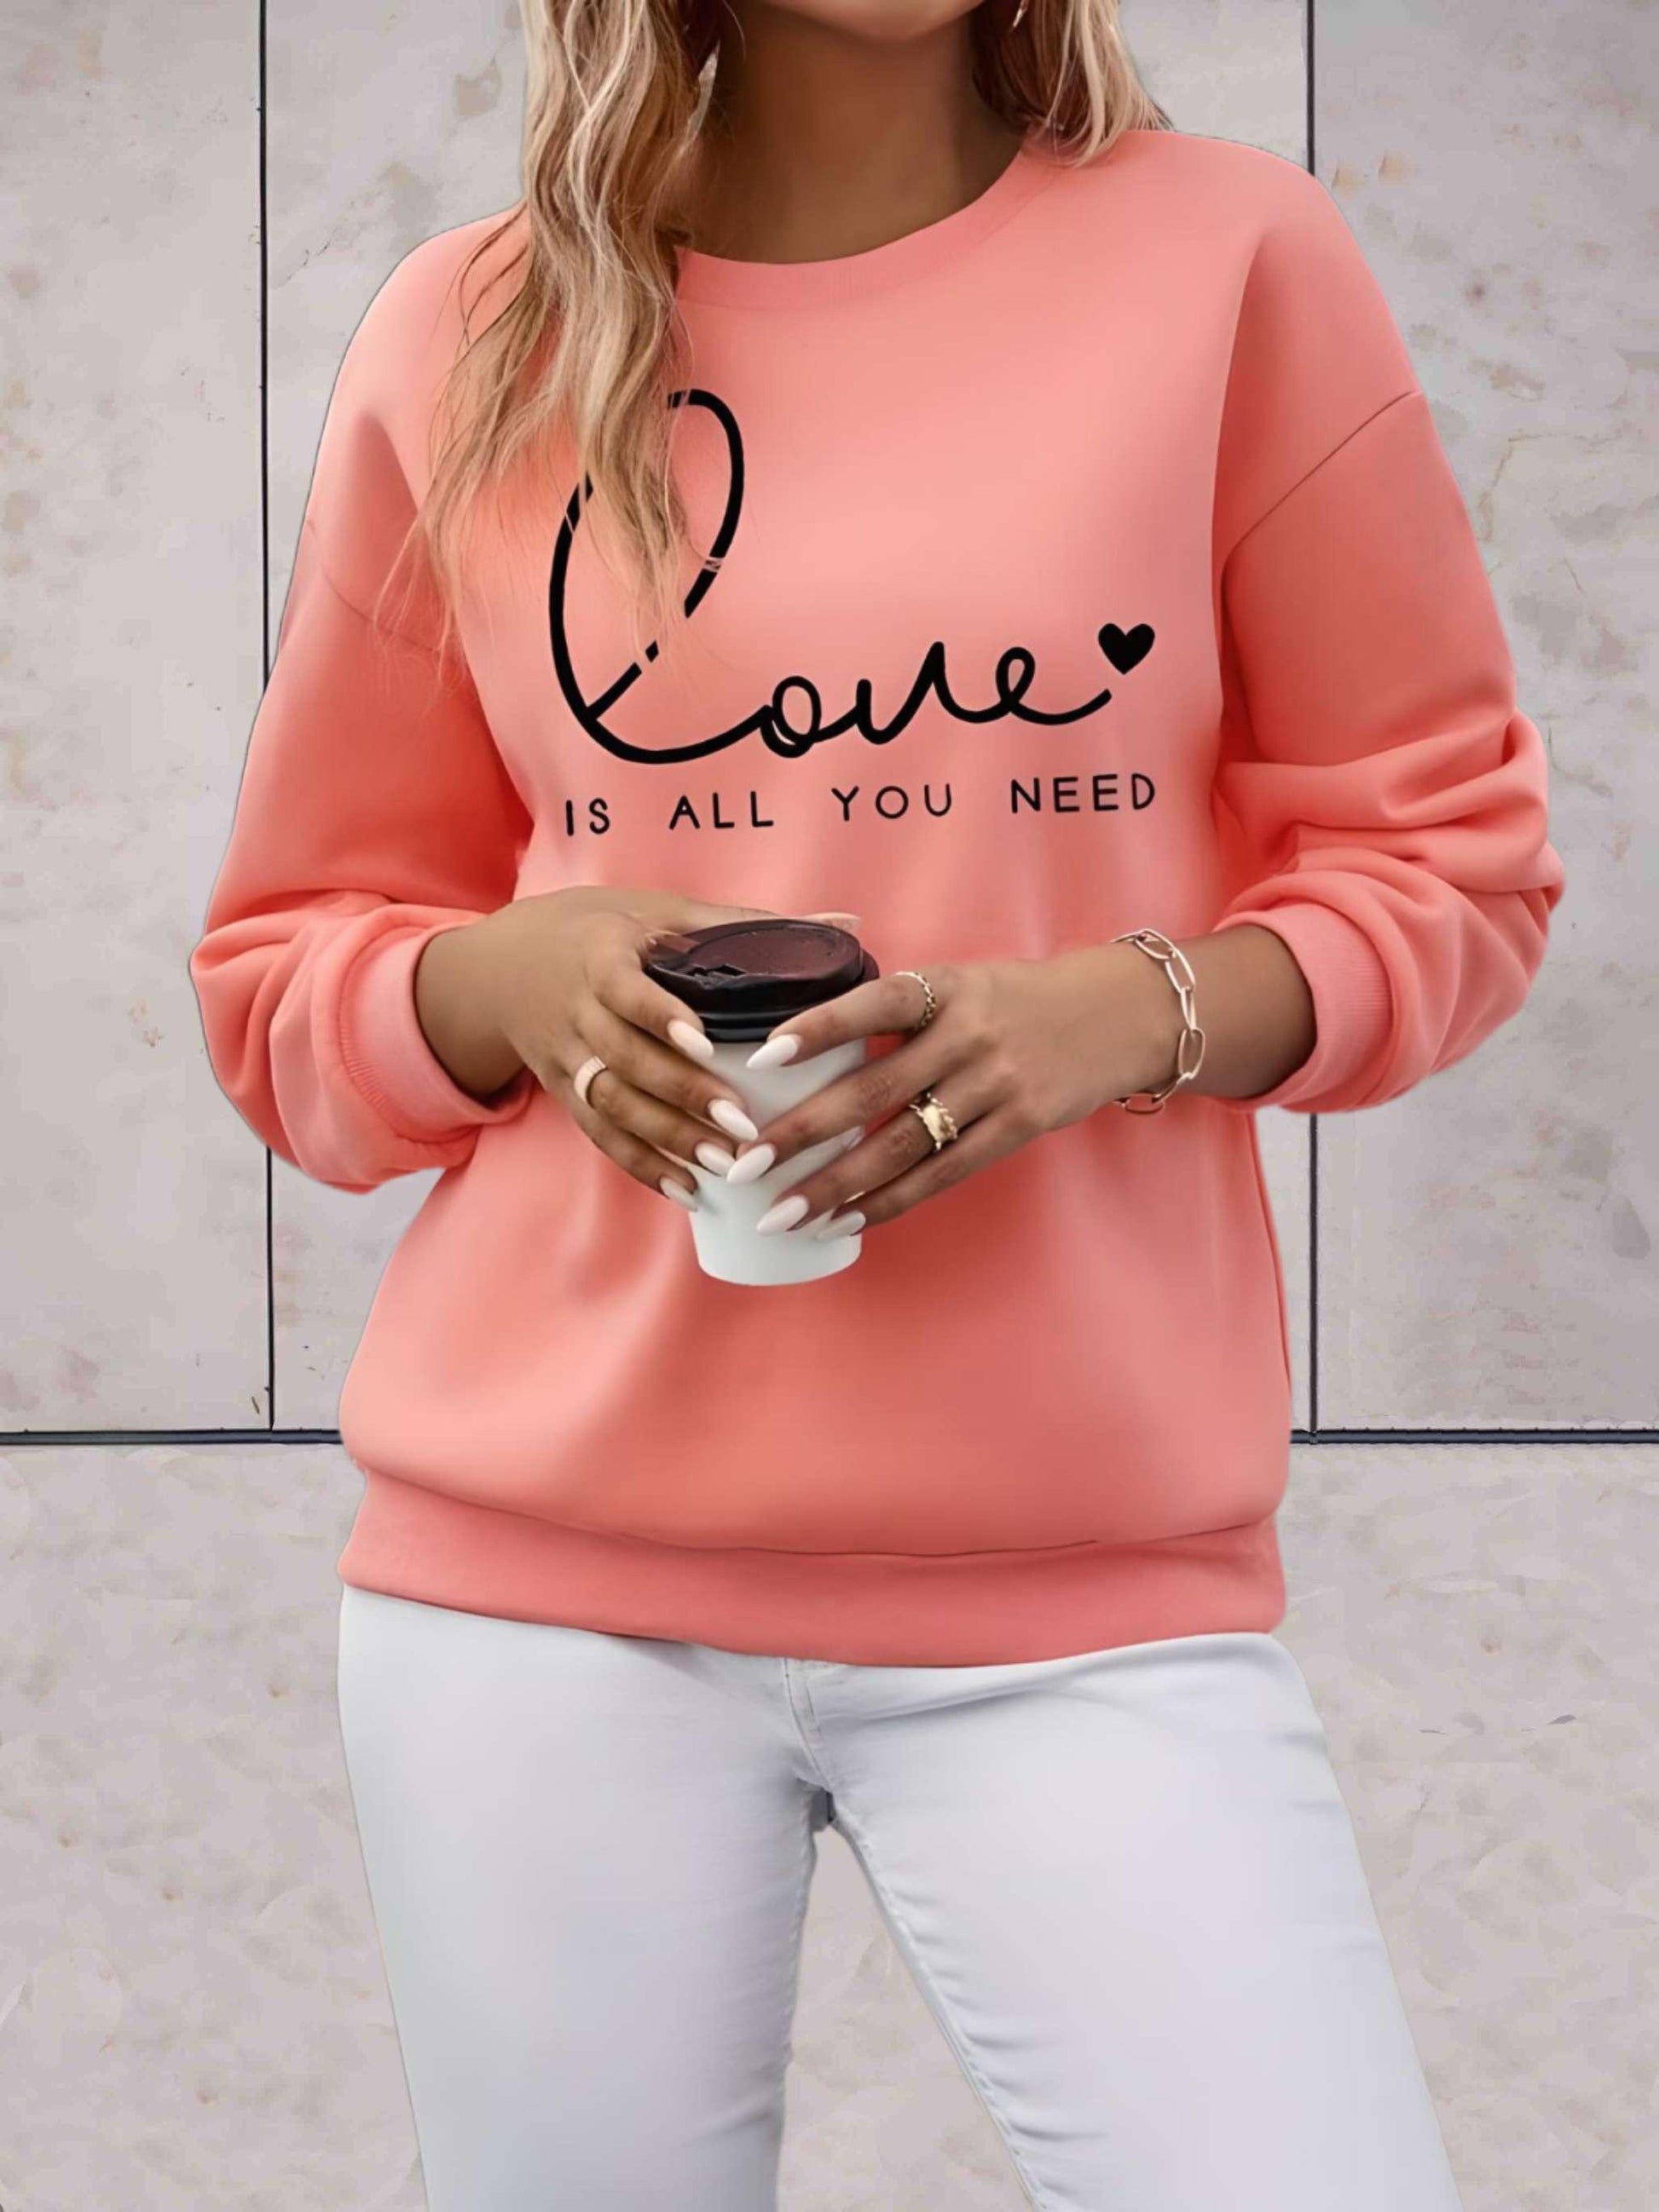 Madison - Lange trui met liefde is alles wat je nodig hebt statement design vooraan - Sky-Sense